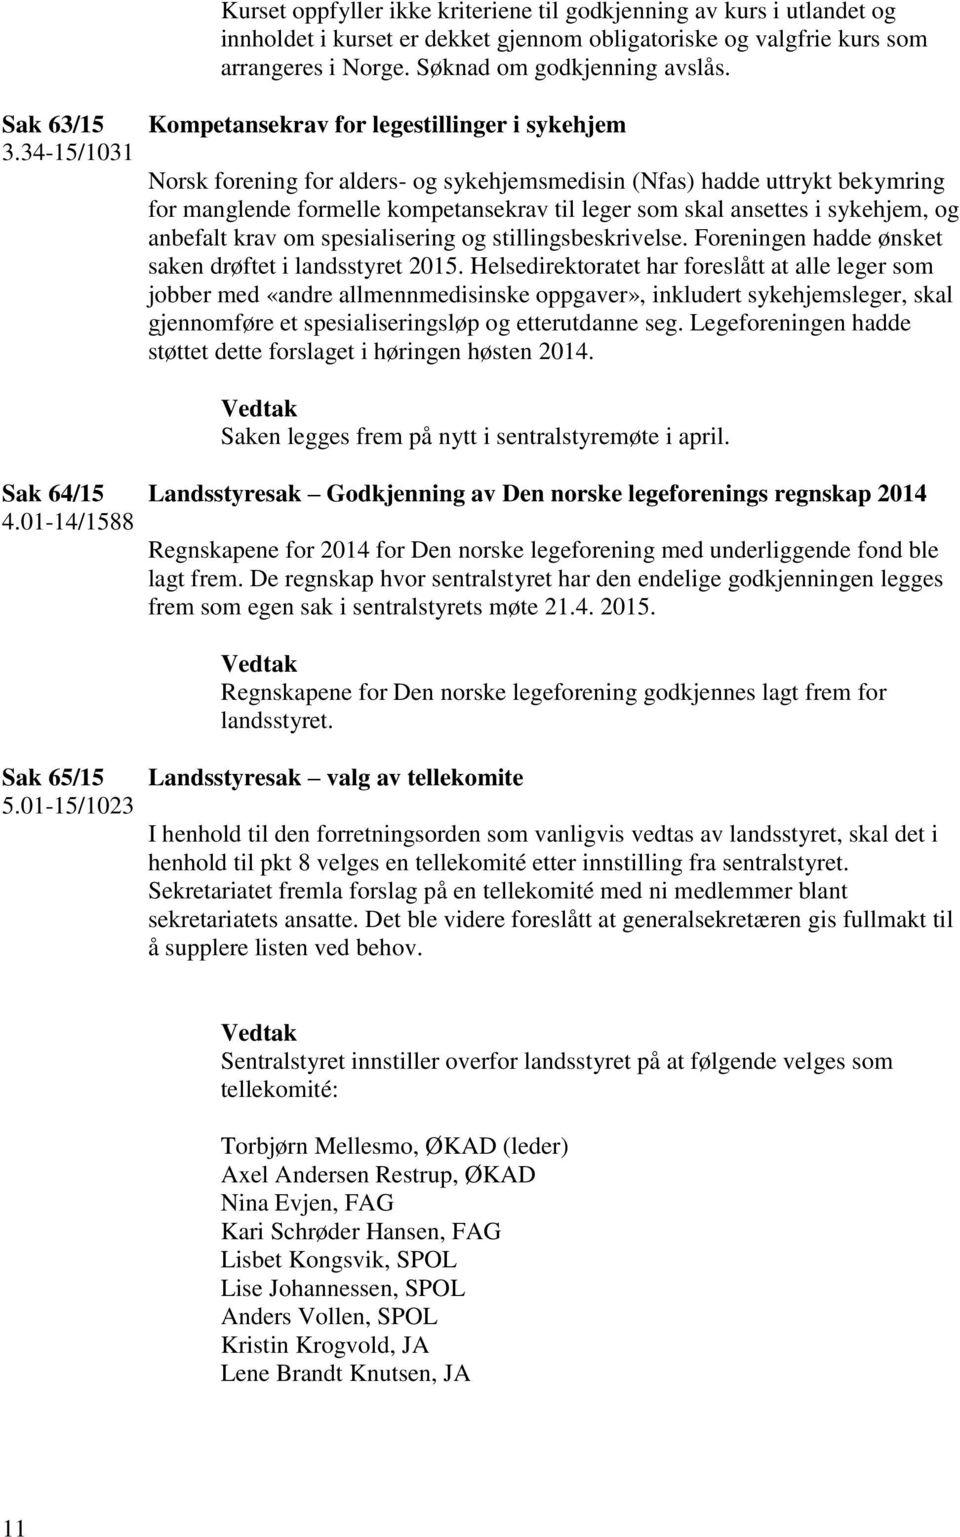 34-15/1031 Kompetansekrav for legestillinger i sykehjem Norsk forening for alders- og sykehjemsmedisin (Nfas) hadde uttrykt bekymring for manglende formelle kompetansekrav til leger som skal ansettes